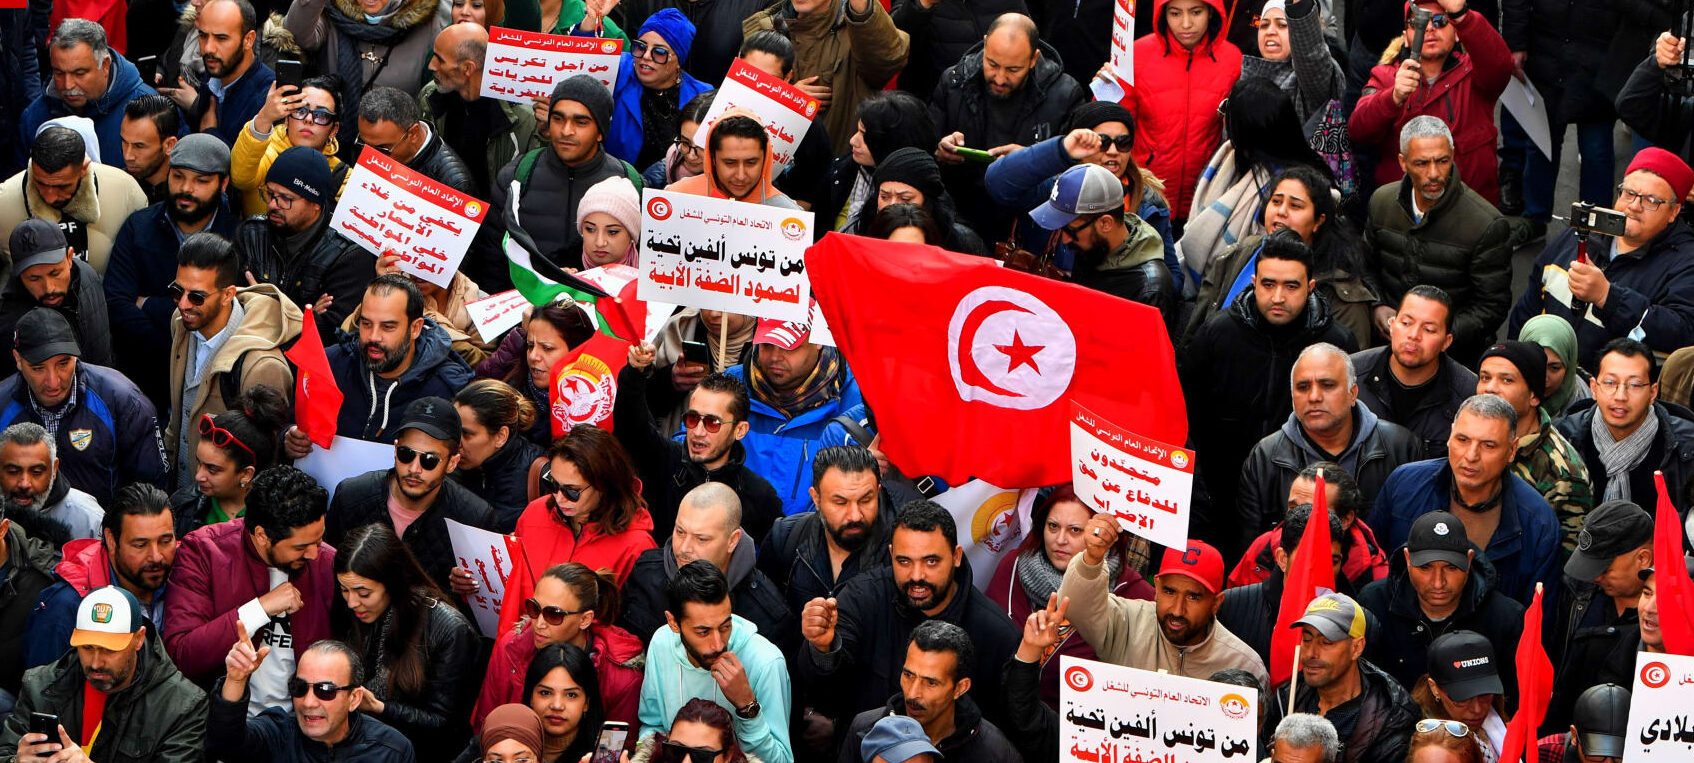 تونس.. خروج الآلاف في مسيرة مناهضة لسياسات قيس سعيد